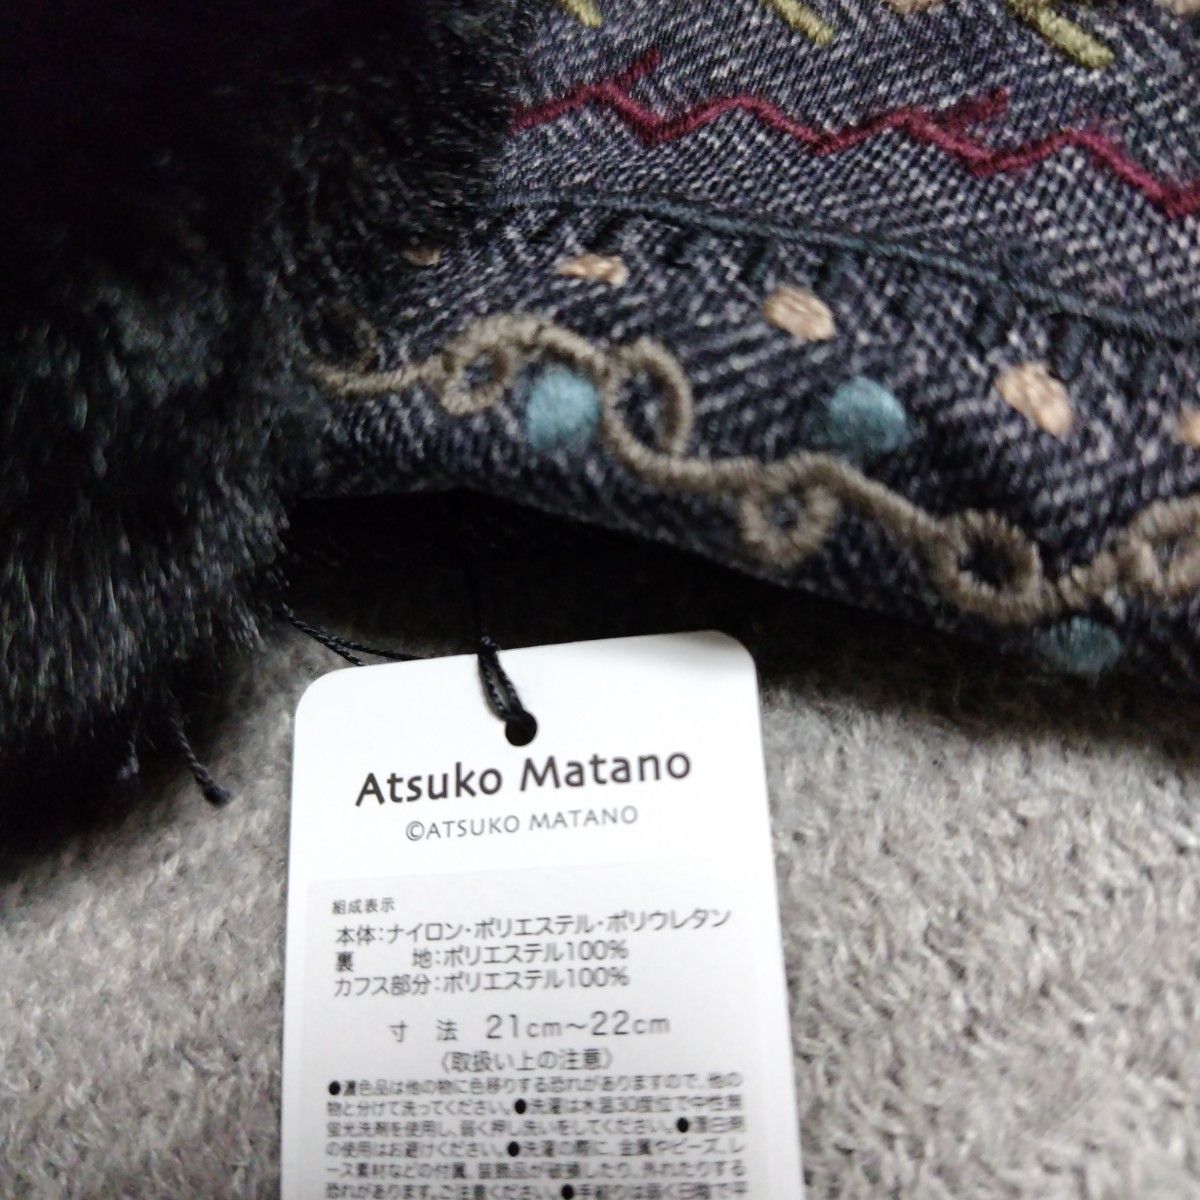 新品 マタノアツコ 刺繍 手袋 & 黒猫 ガーゼハンカチ グレー 